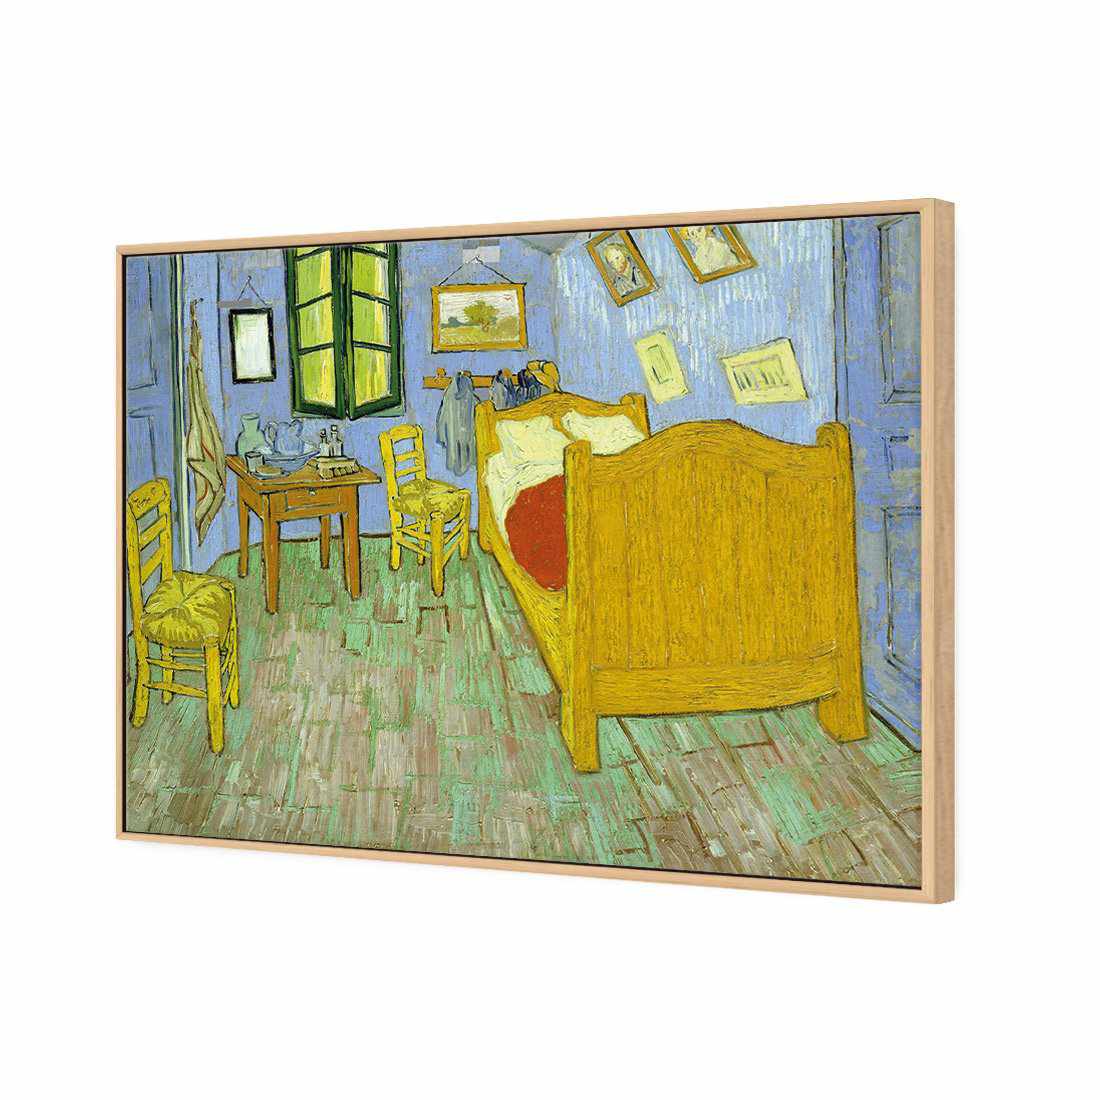 Vincent's Bedroom - Van Gogh Canvas Art-Canvas-Wall Art Designs-45x30cm-Canvas - Oak Frame-Wall Art Designs